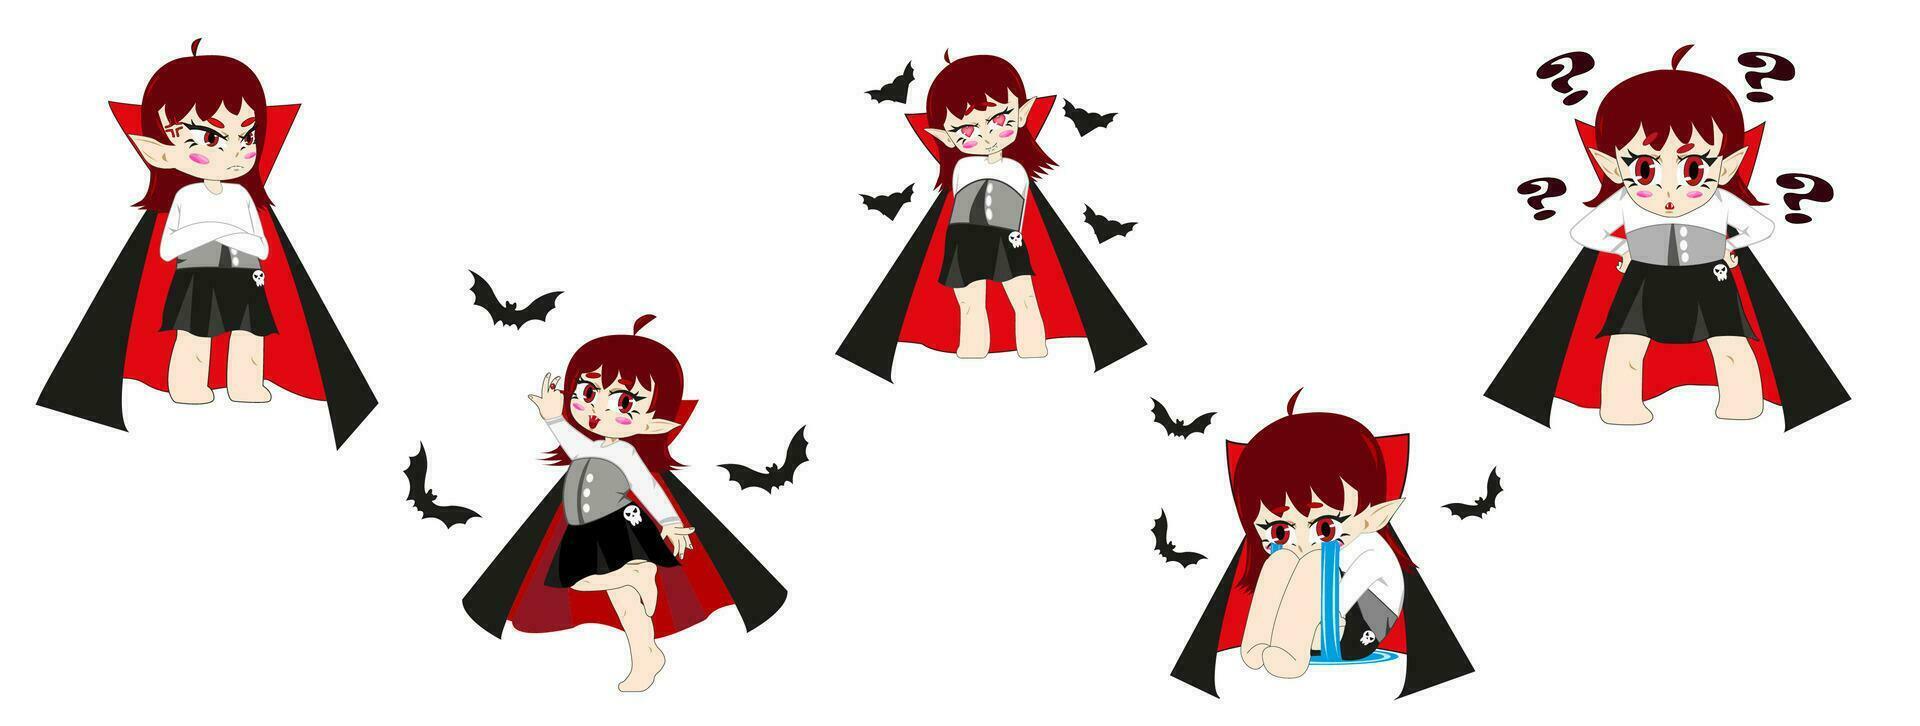 Menina Anime Vampiro Bonito Ícone Dia Das Bruxas Dos Desenhos imagem  vetorial de InnaMarchenko© 665252506